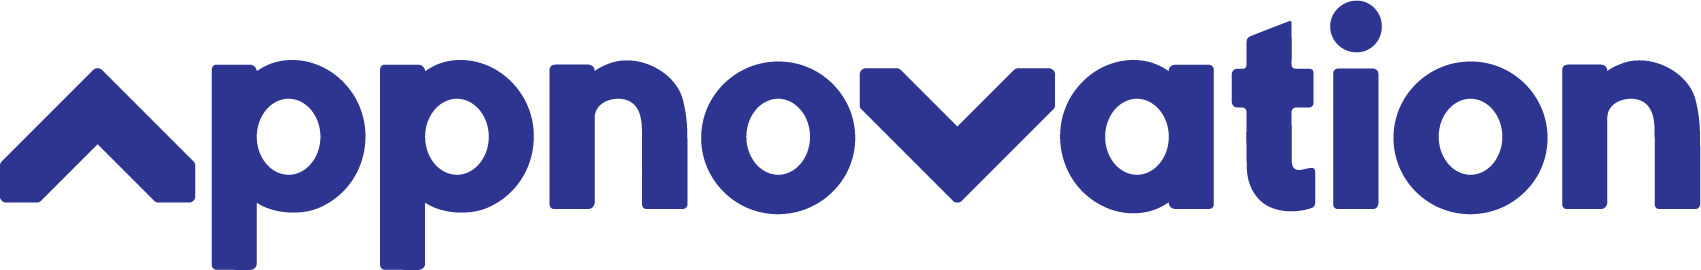 Appnovation Logo